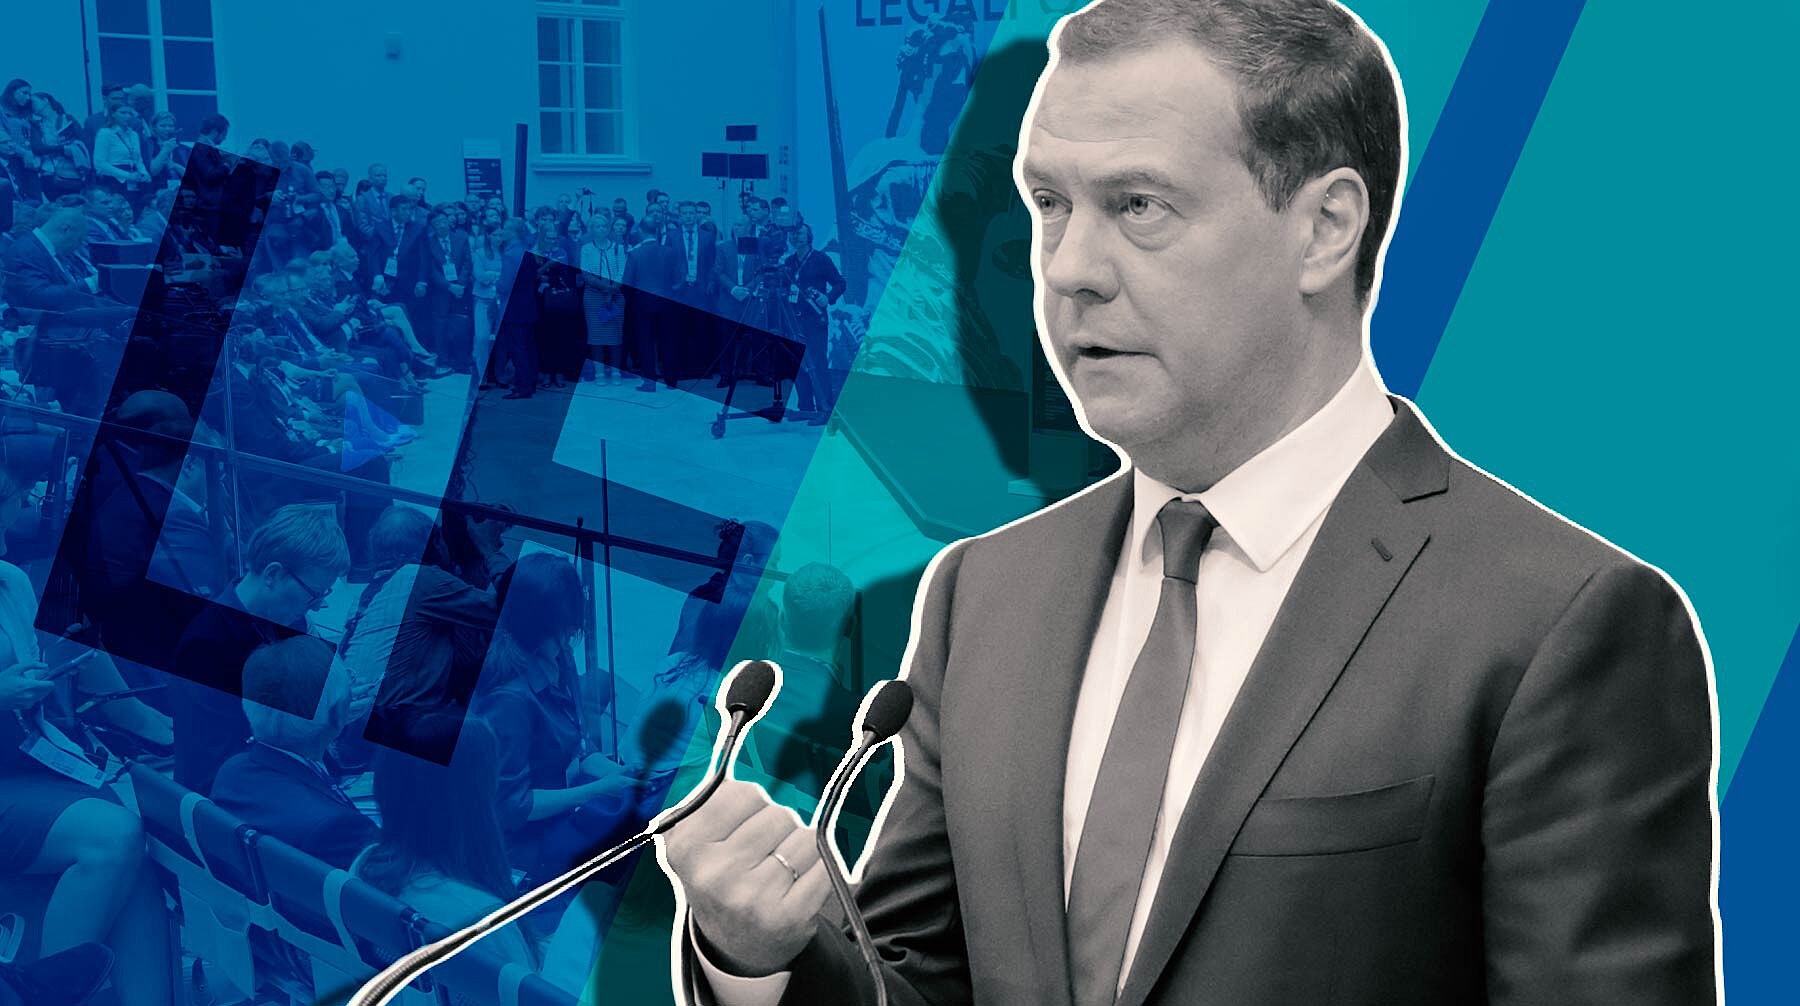 Патриот и «плохой полицейский». Политологи проанализировали выступление Медведева на ПМЮФ